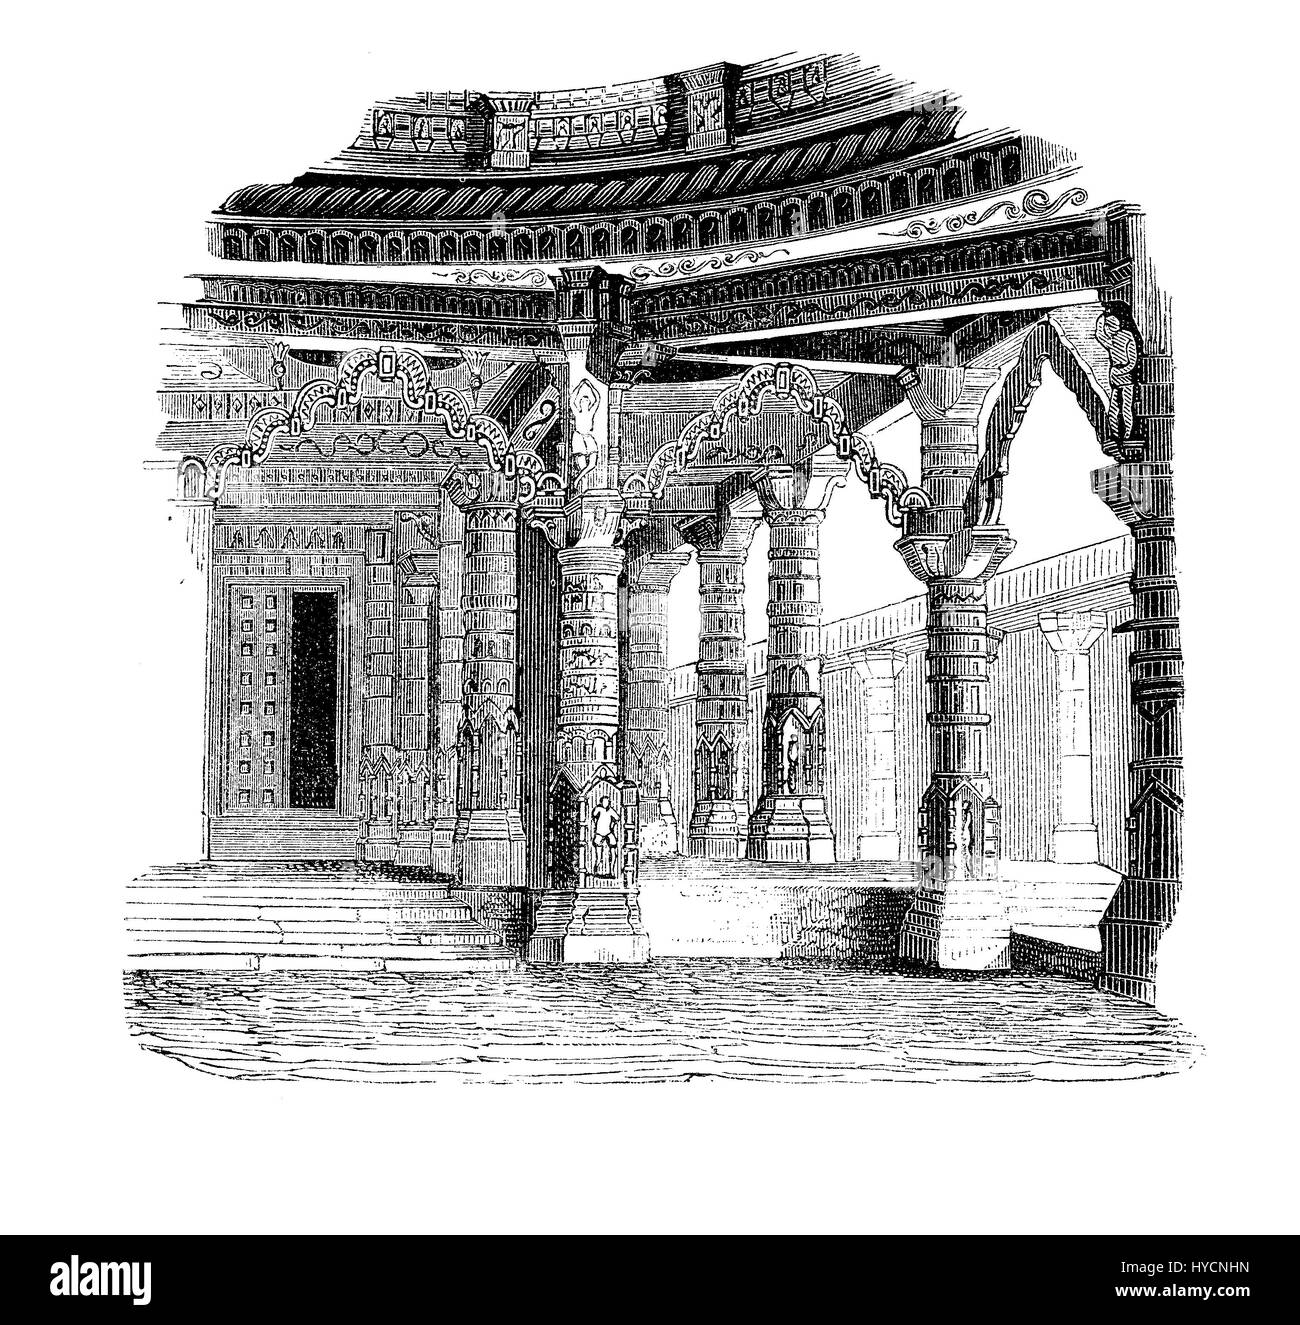 Gravure d'époque du Temple de Vimala Sah sur le mont Abu au Rajasthan - Inde avec des colonnes en marbre blanc sculpté élaborée, les voûtes et les plafonds de la perfection architecturale . Banque D'Images